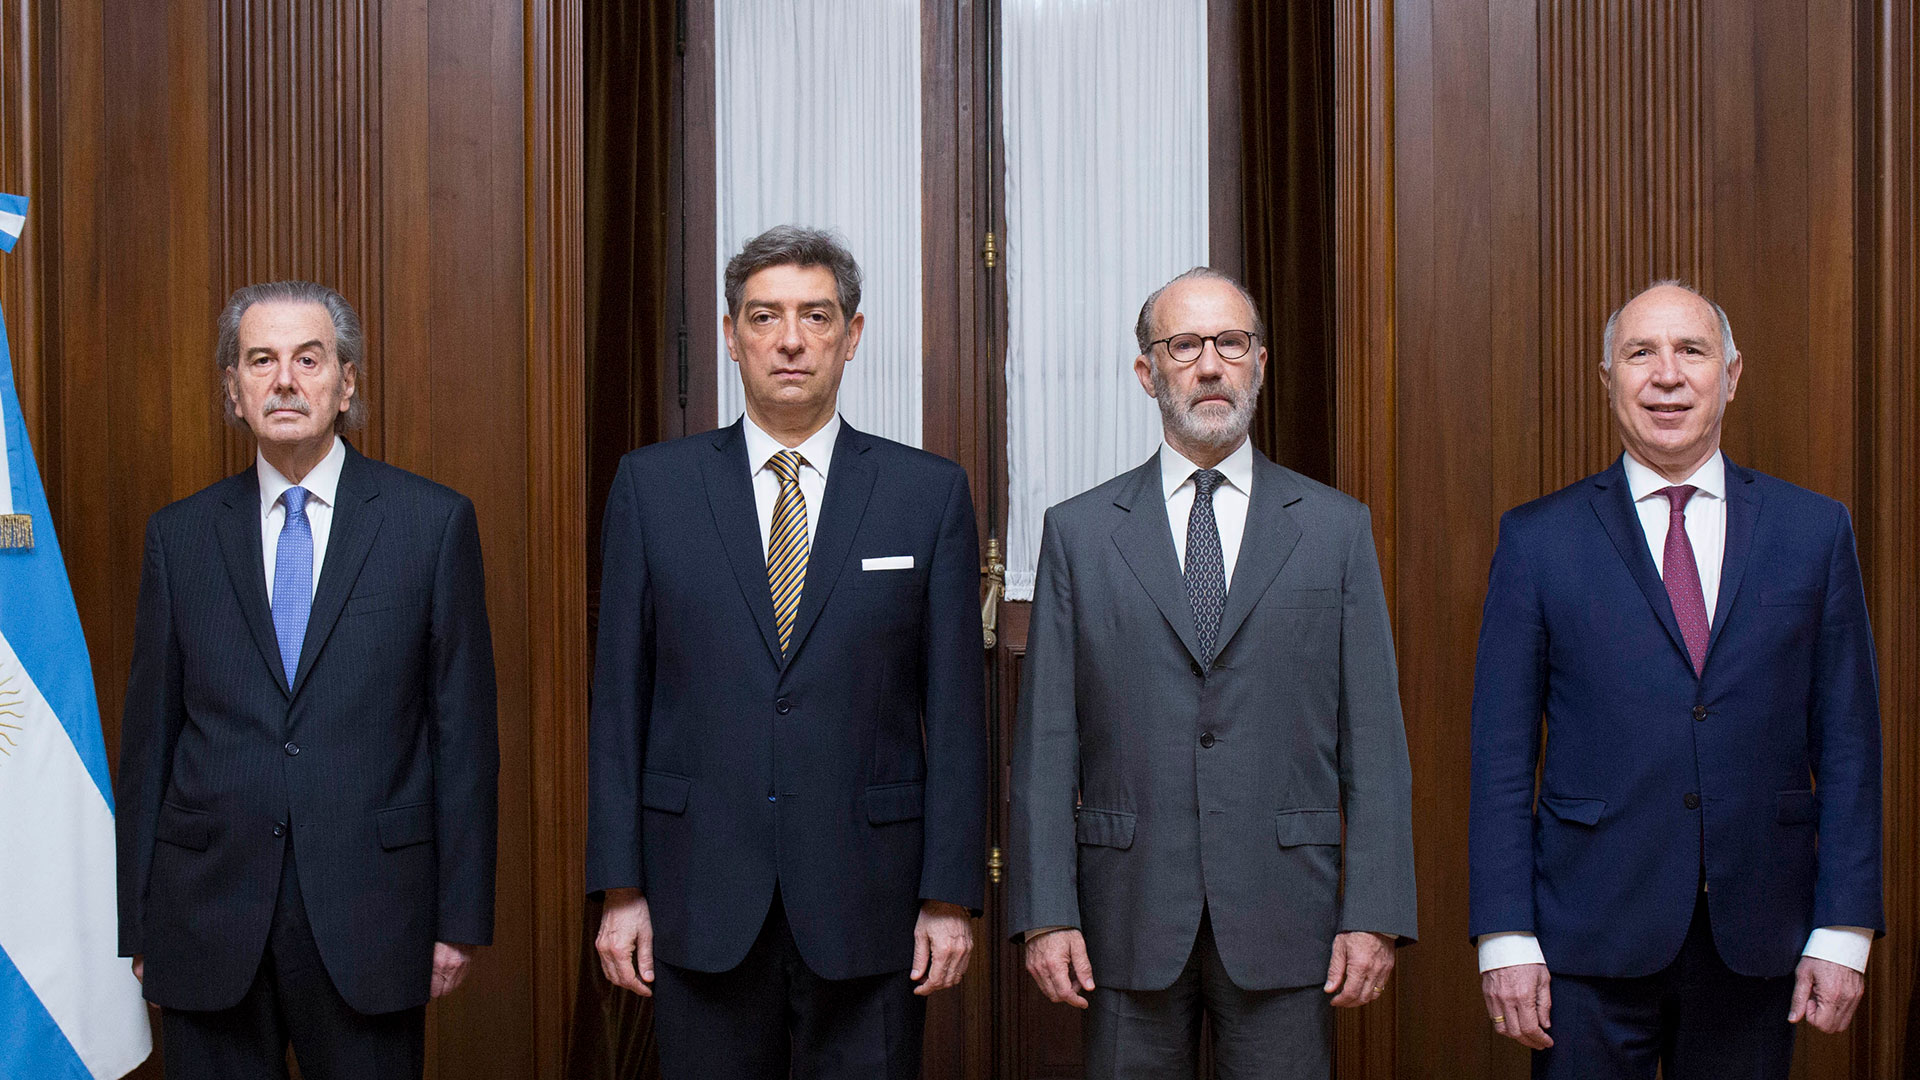  Juan Carlos Maqueda, Horacio Rosatti, Carlos Rosenkrantz y Ricardo Lorenzetti, los integrantes de la Corte Suprema